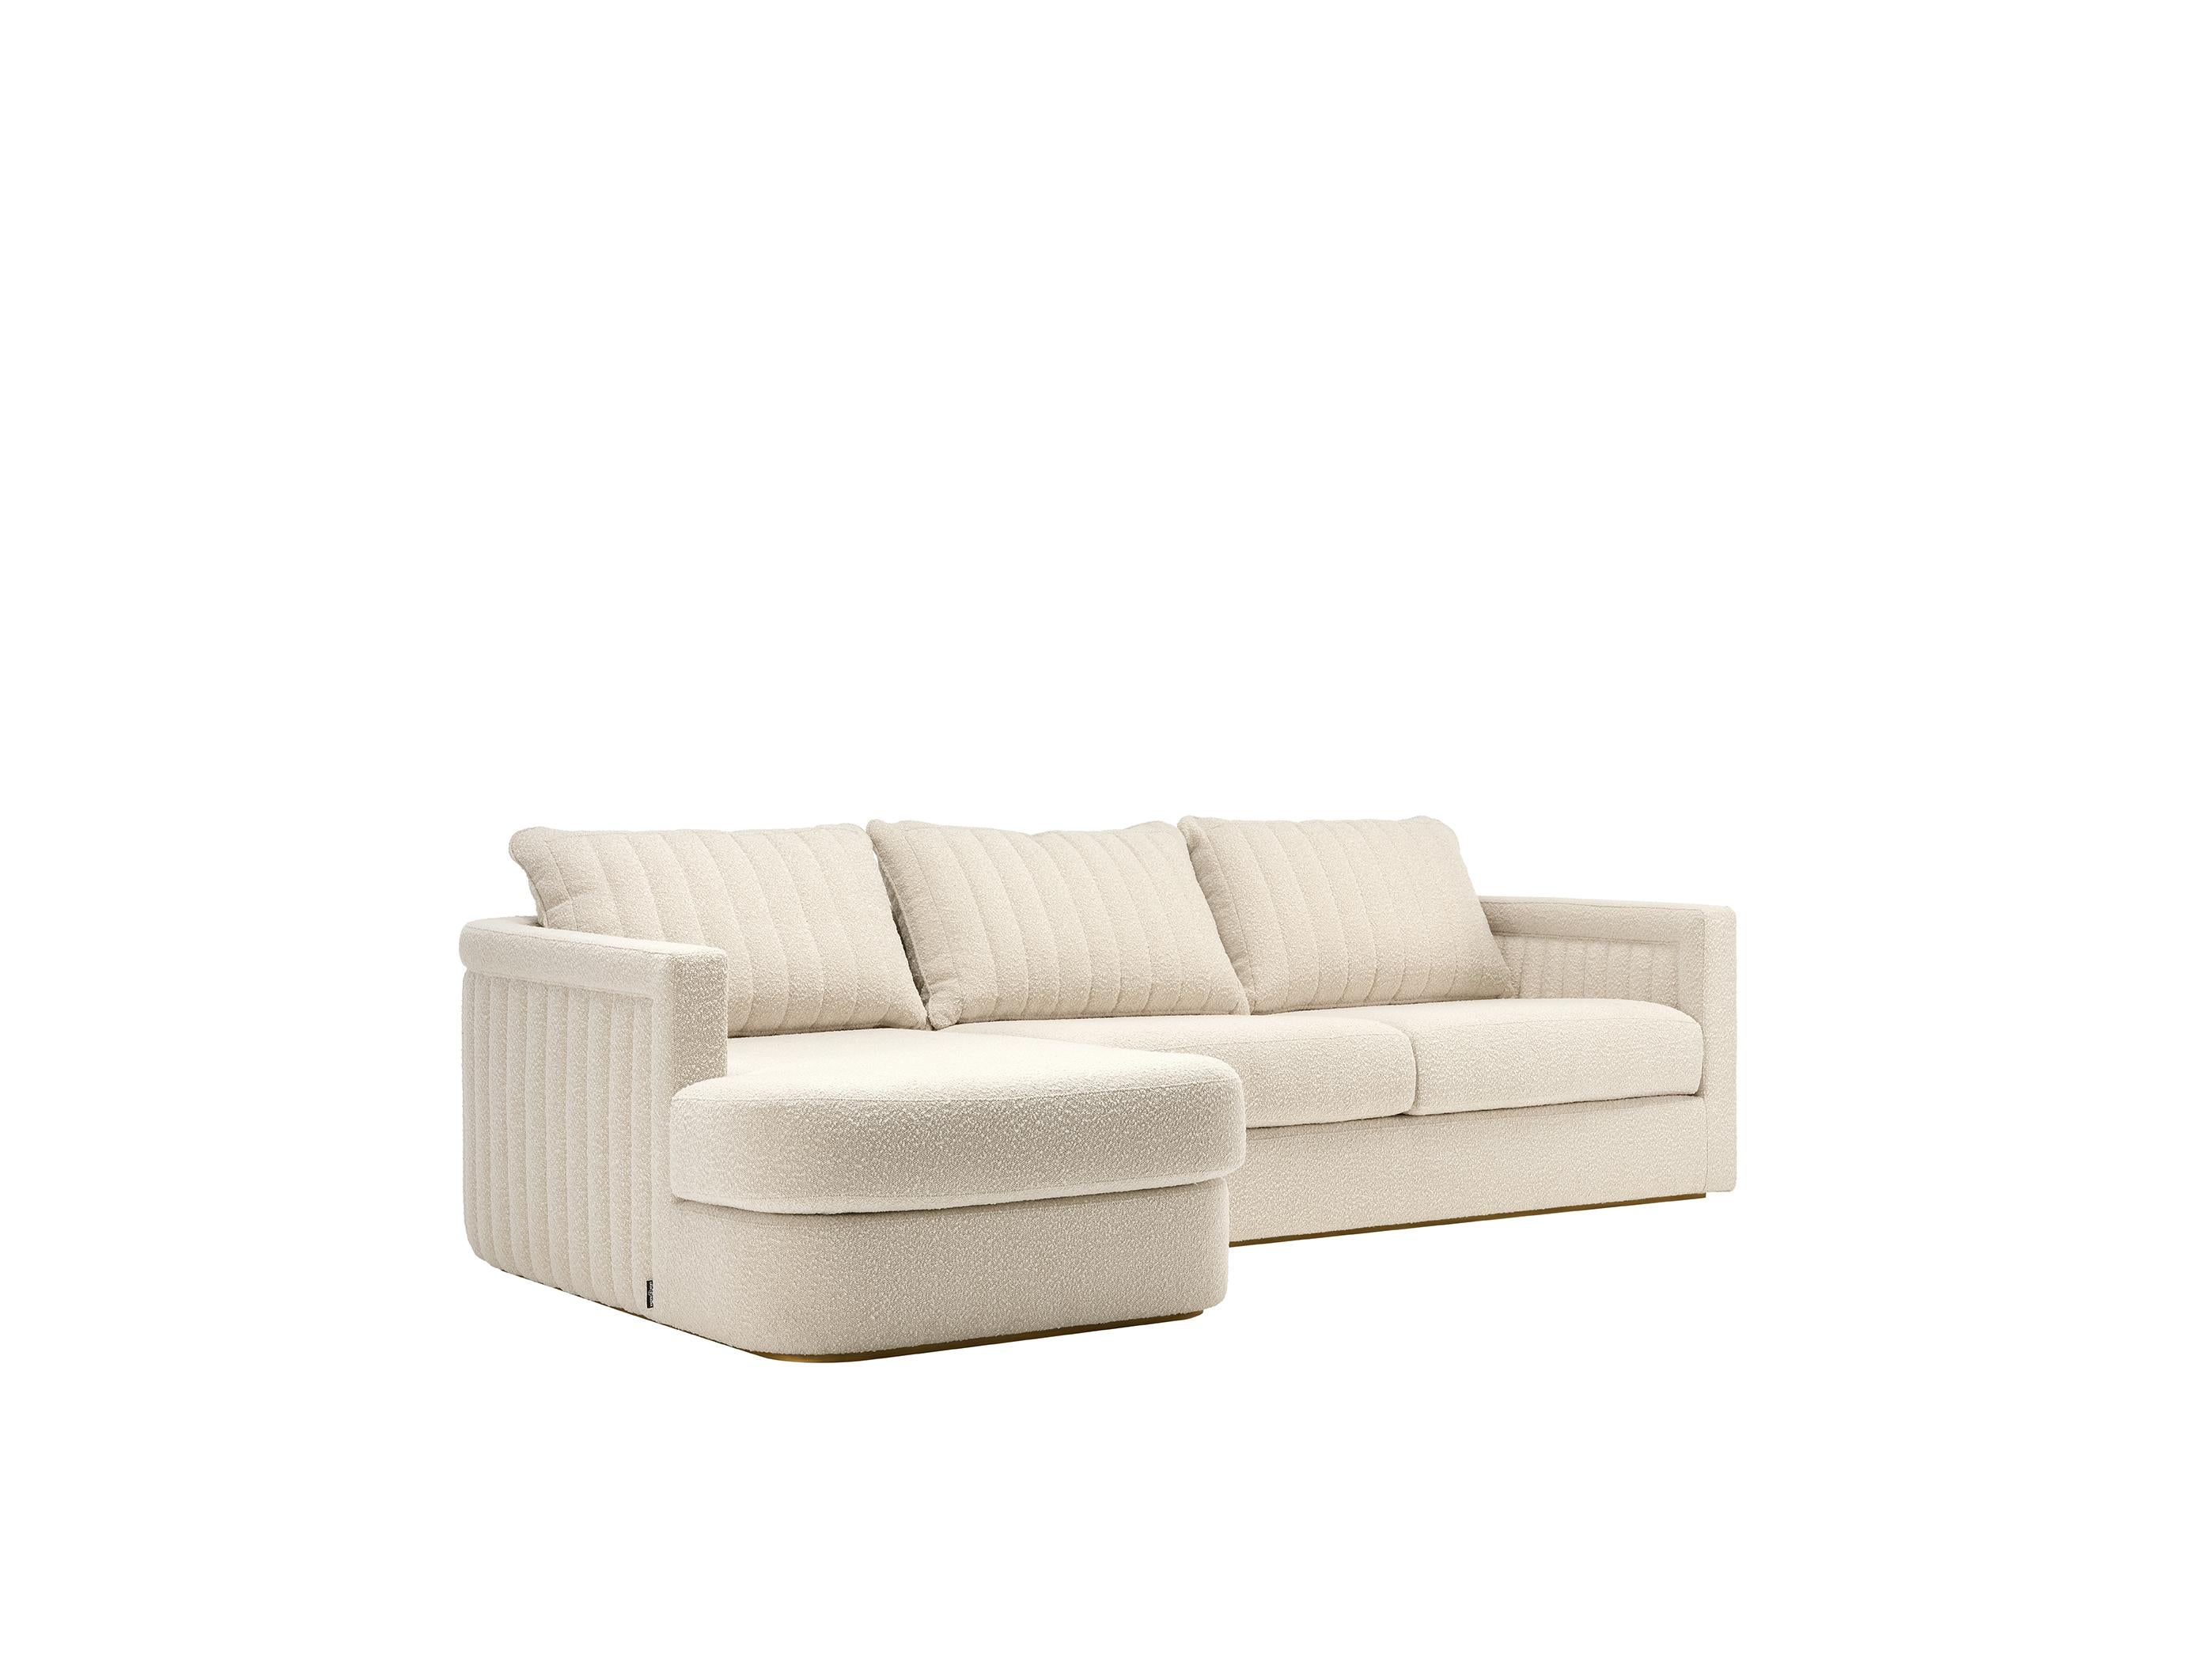 Die Rückenlehne des DRUMMOND-Sofas wird durch eine zarte Steppung hervorgehoben, so dass es auch in der Mitte des Raumes verwendet werden kann. Dieses charmante Sofa könnte ohne weiteres als Hauptdarsteller des Wohnzimmers betrachtet werden.